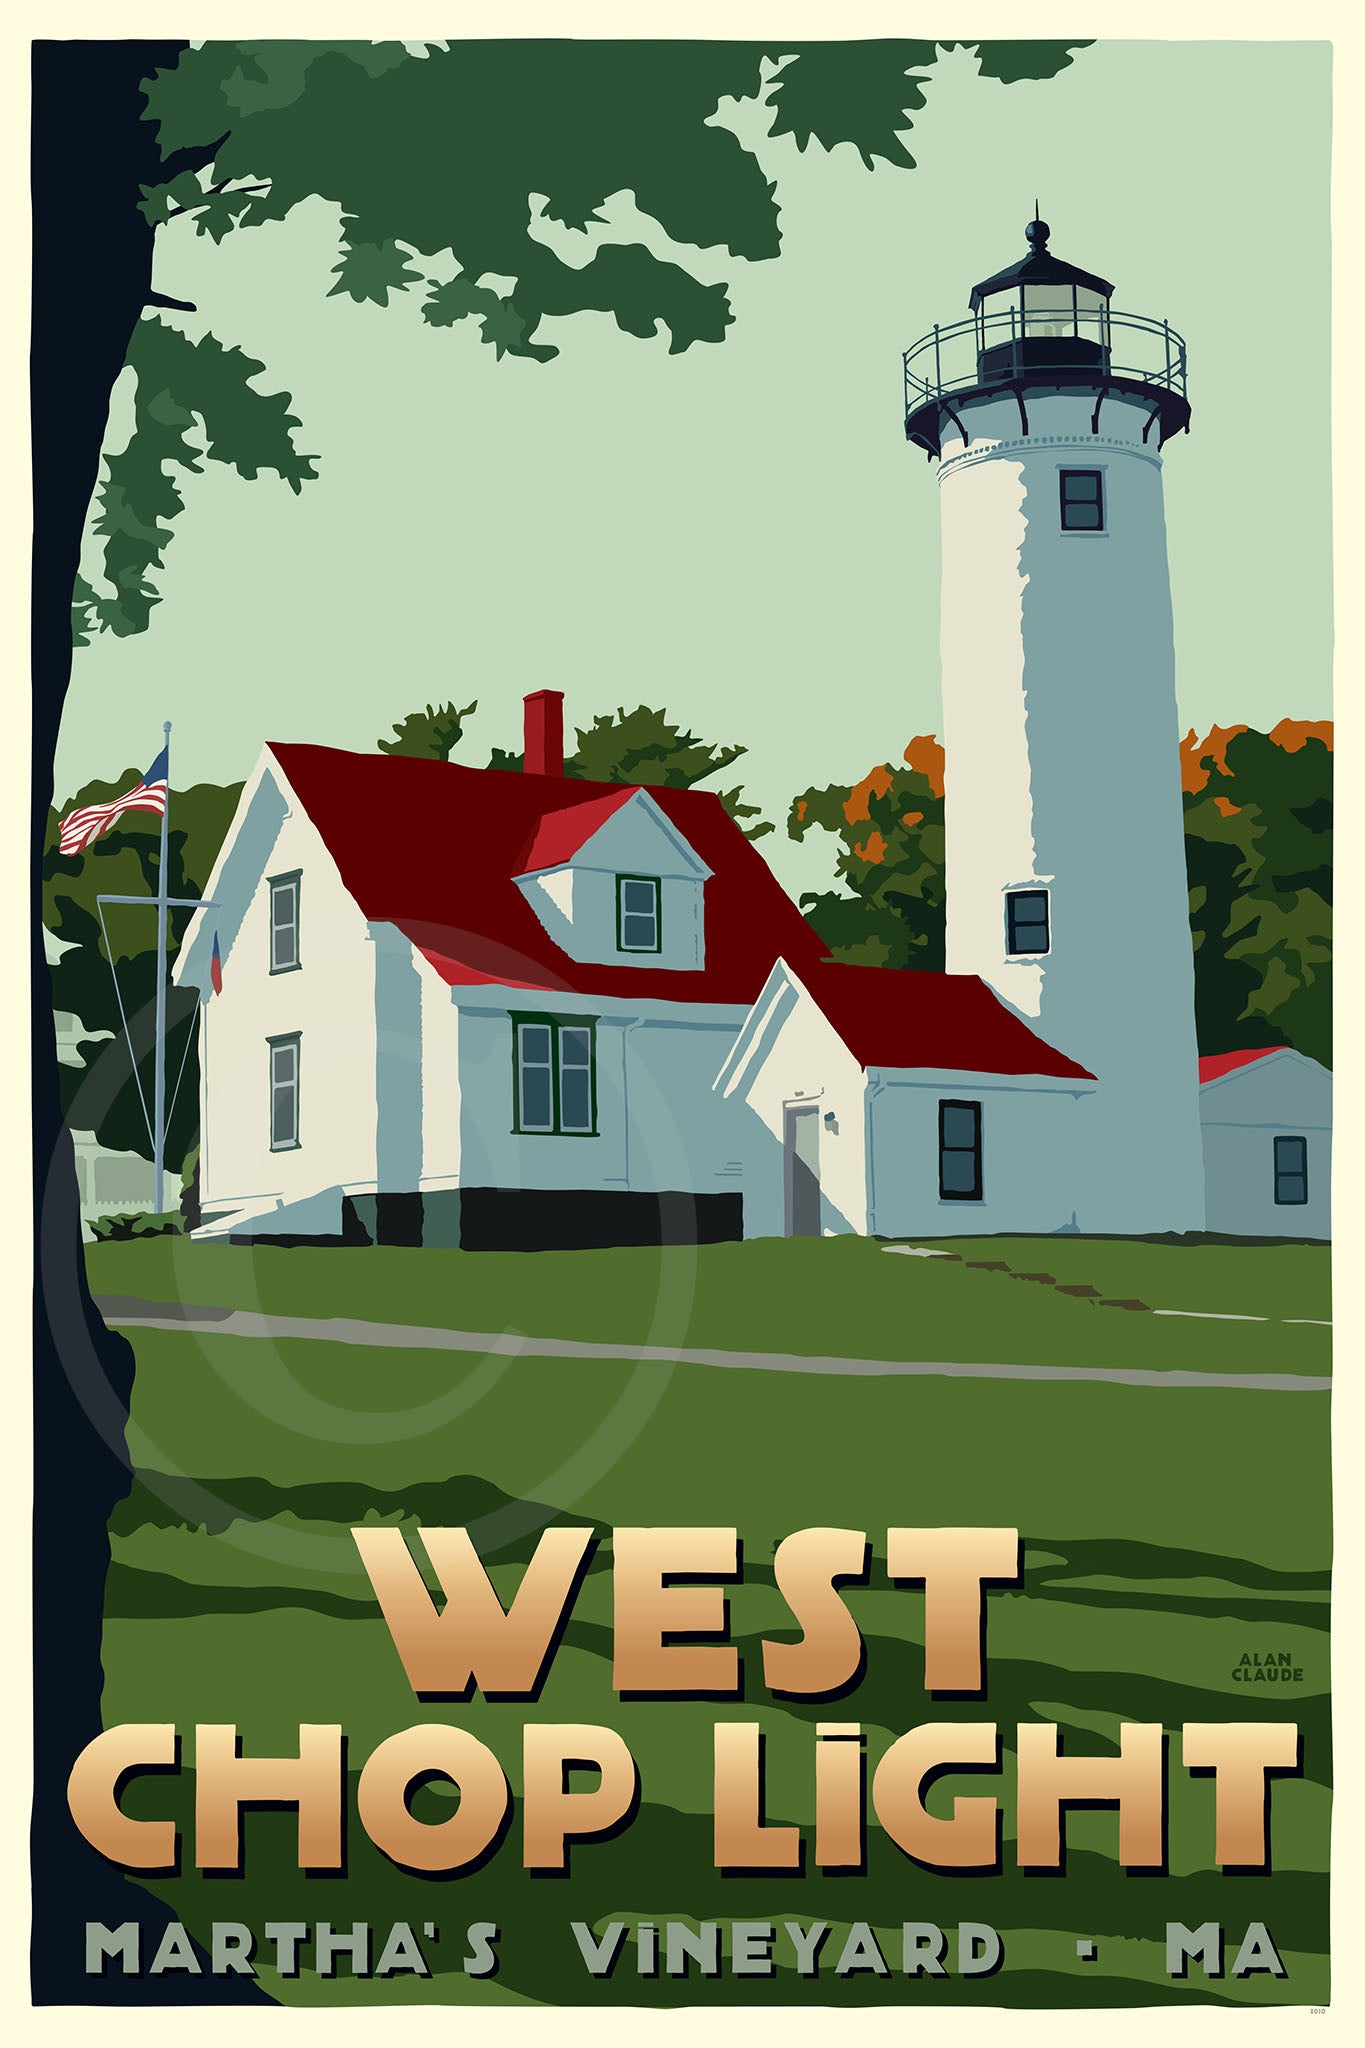 West Chop Light Art Print 24" x 36" Travel Poster By Alan Claude - Massachusetts